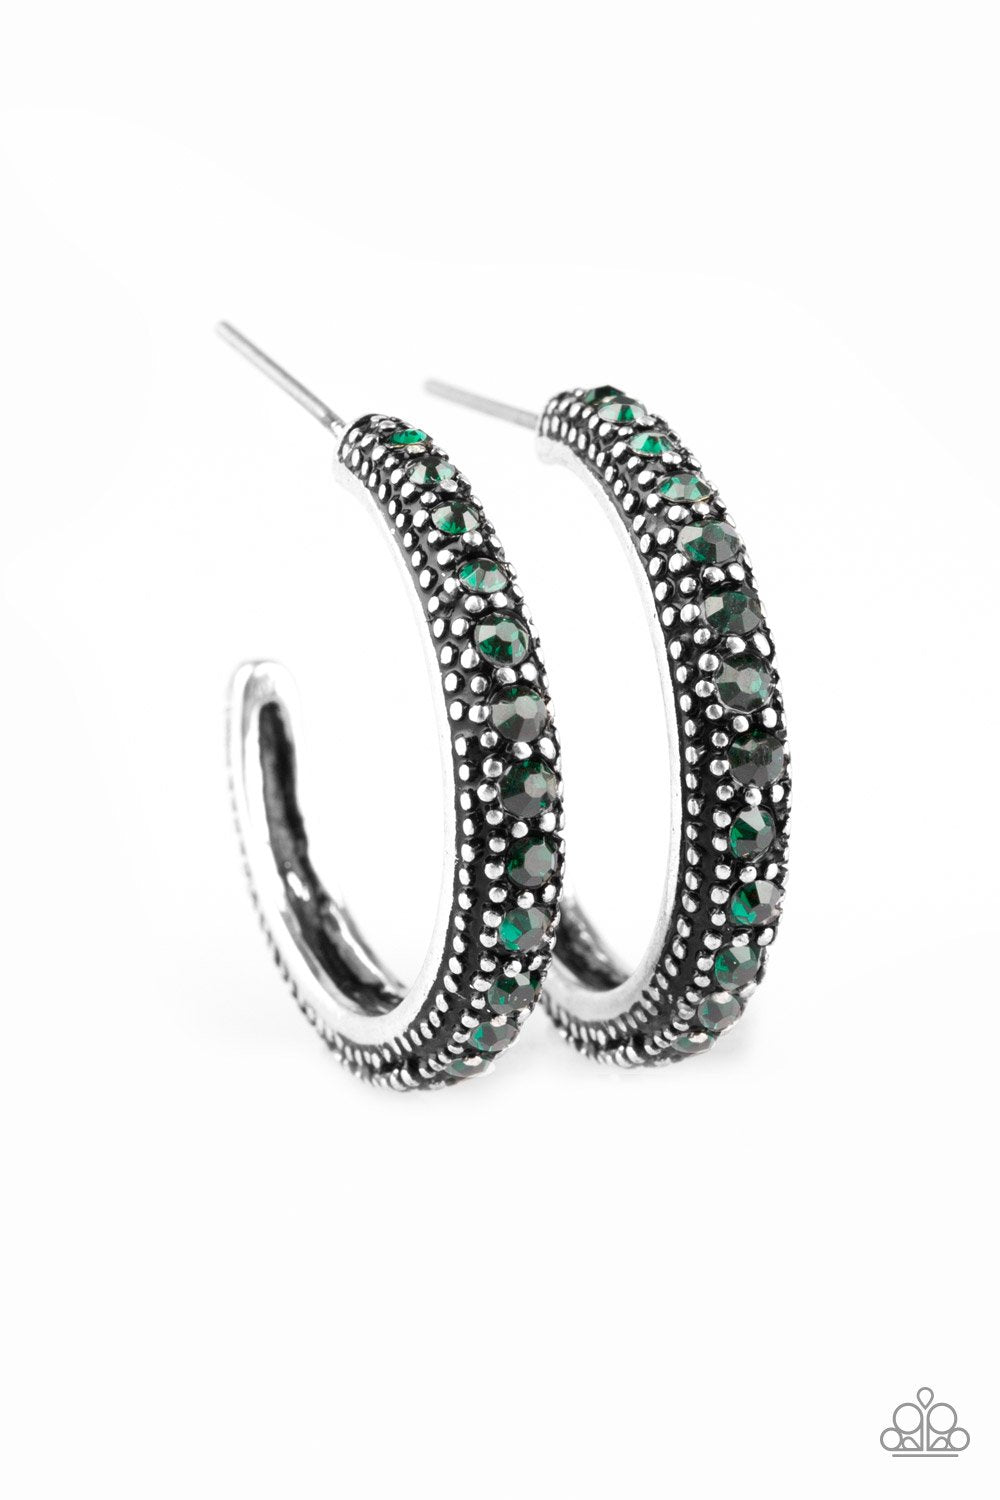 TWINKLING TINSELTOWN - Green hoop earrings